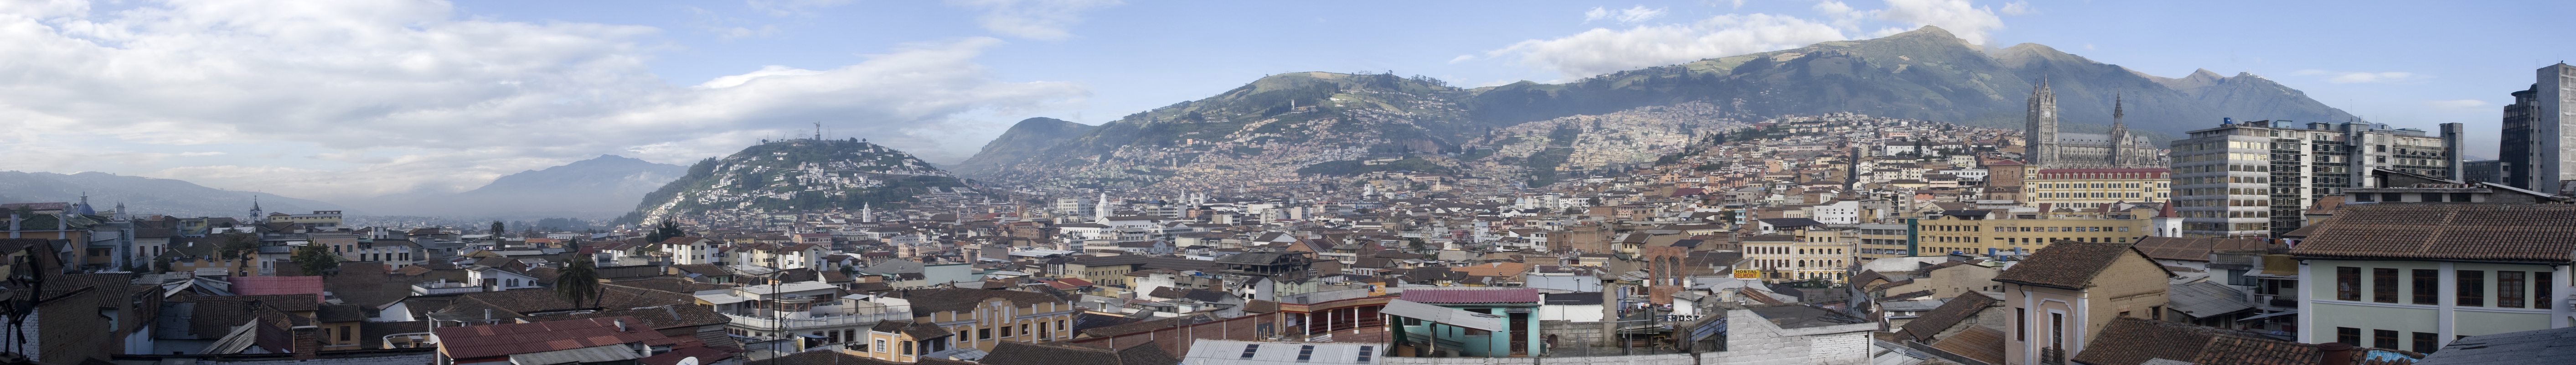 Quito pano